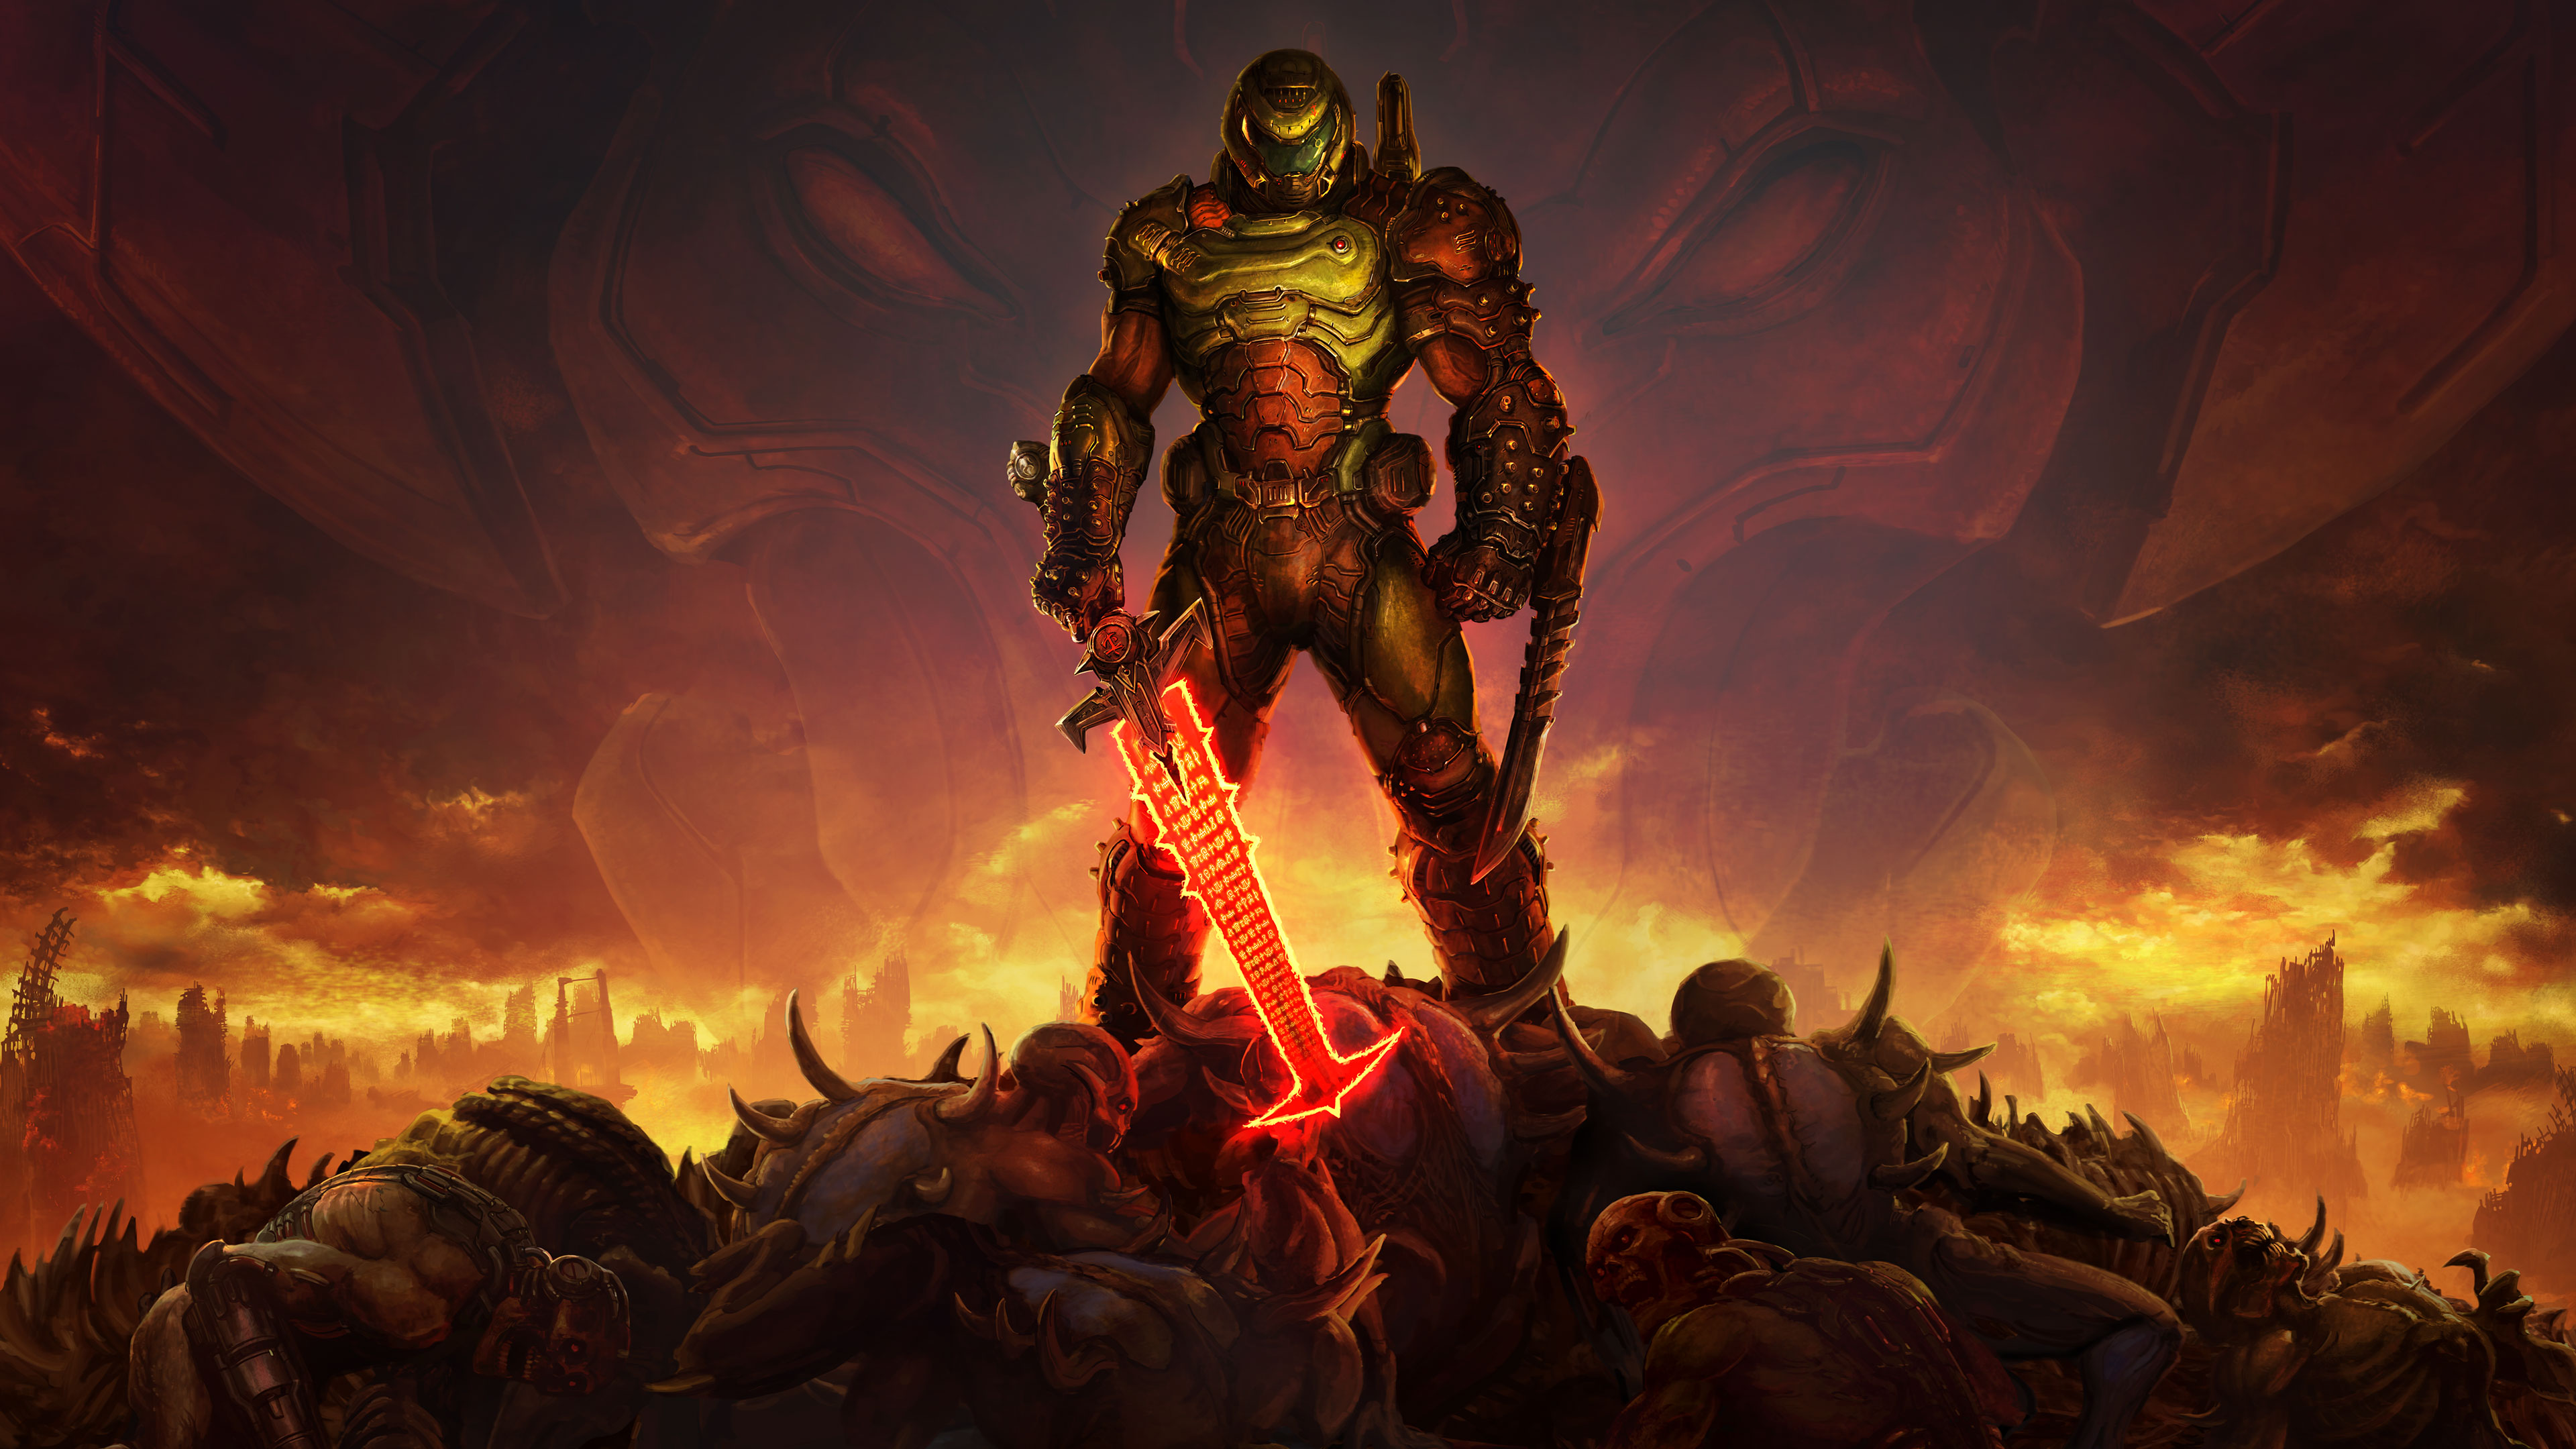 Doom Slayer Doom Eternal , HD Wallpaper & Backgrounds